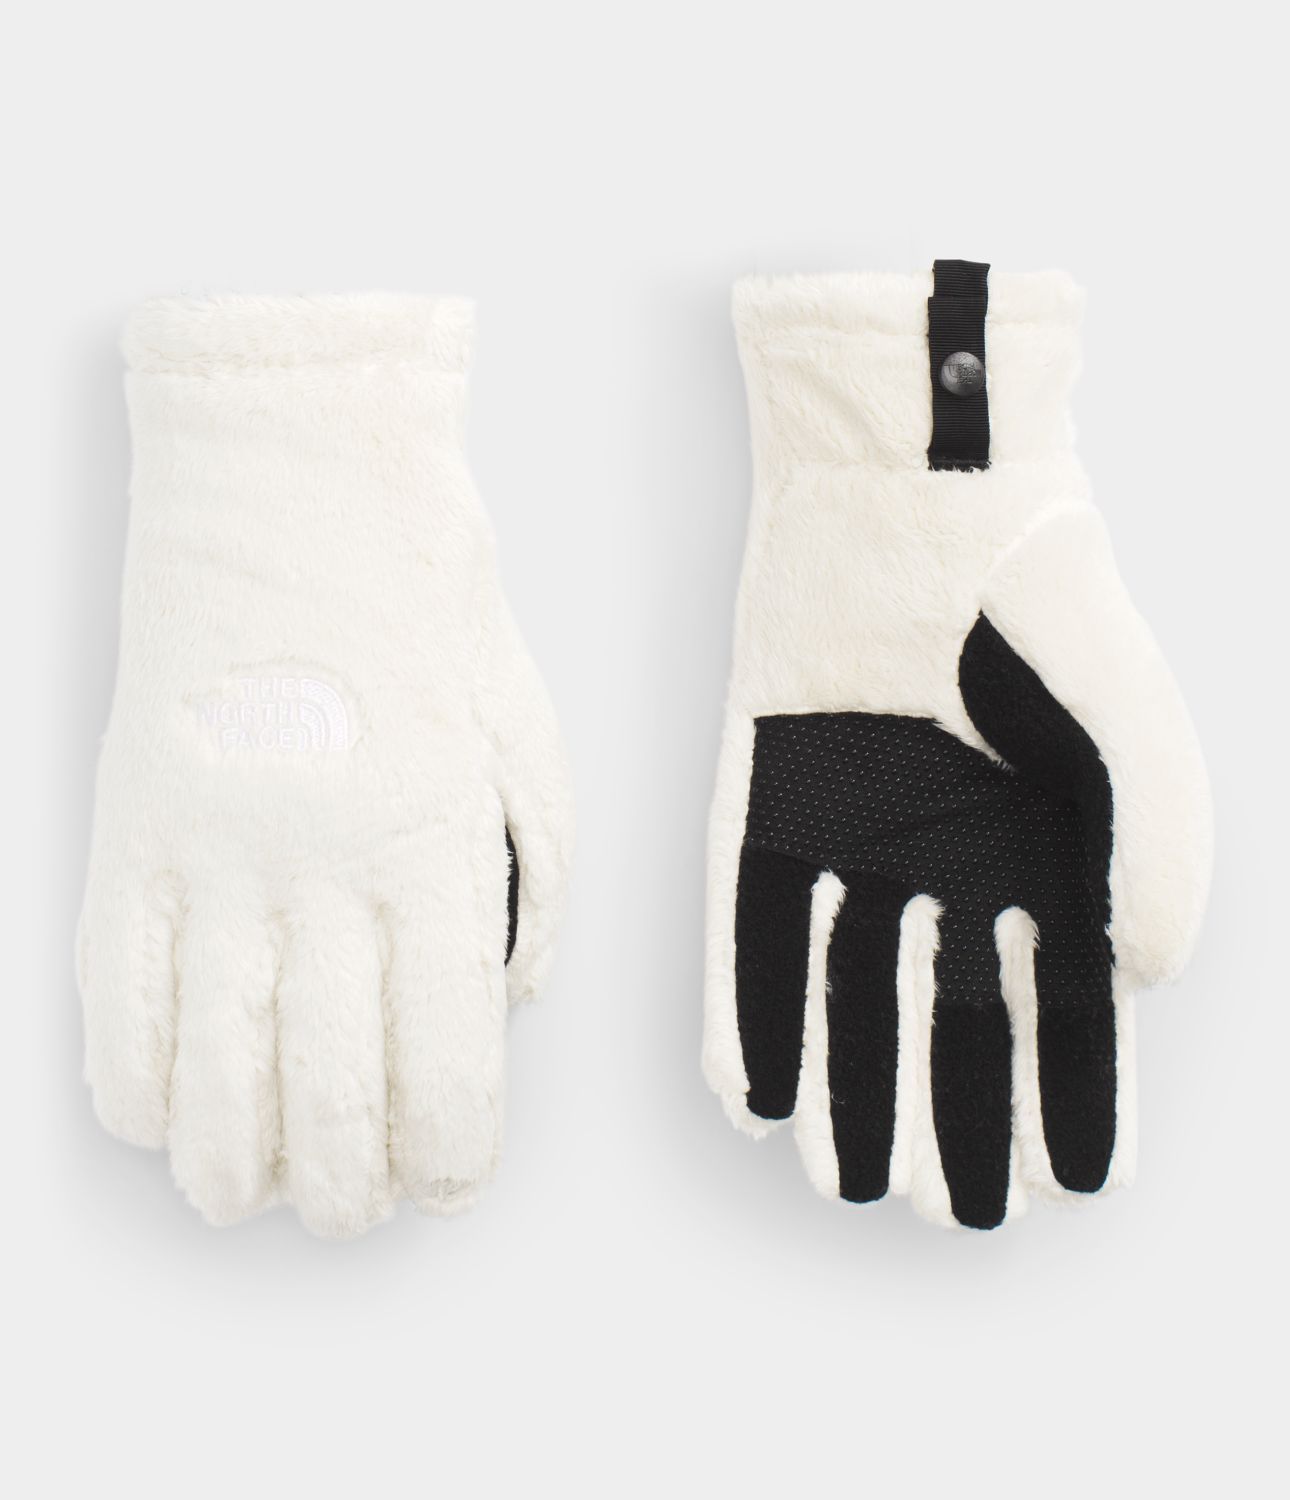 north face women's tech gloves